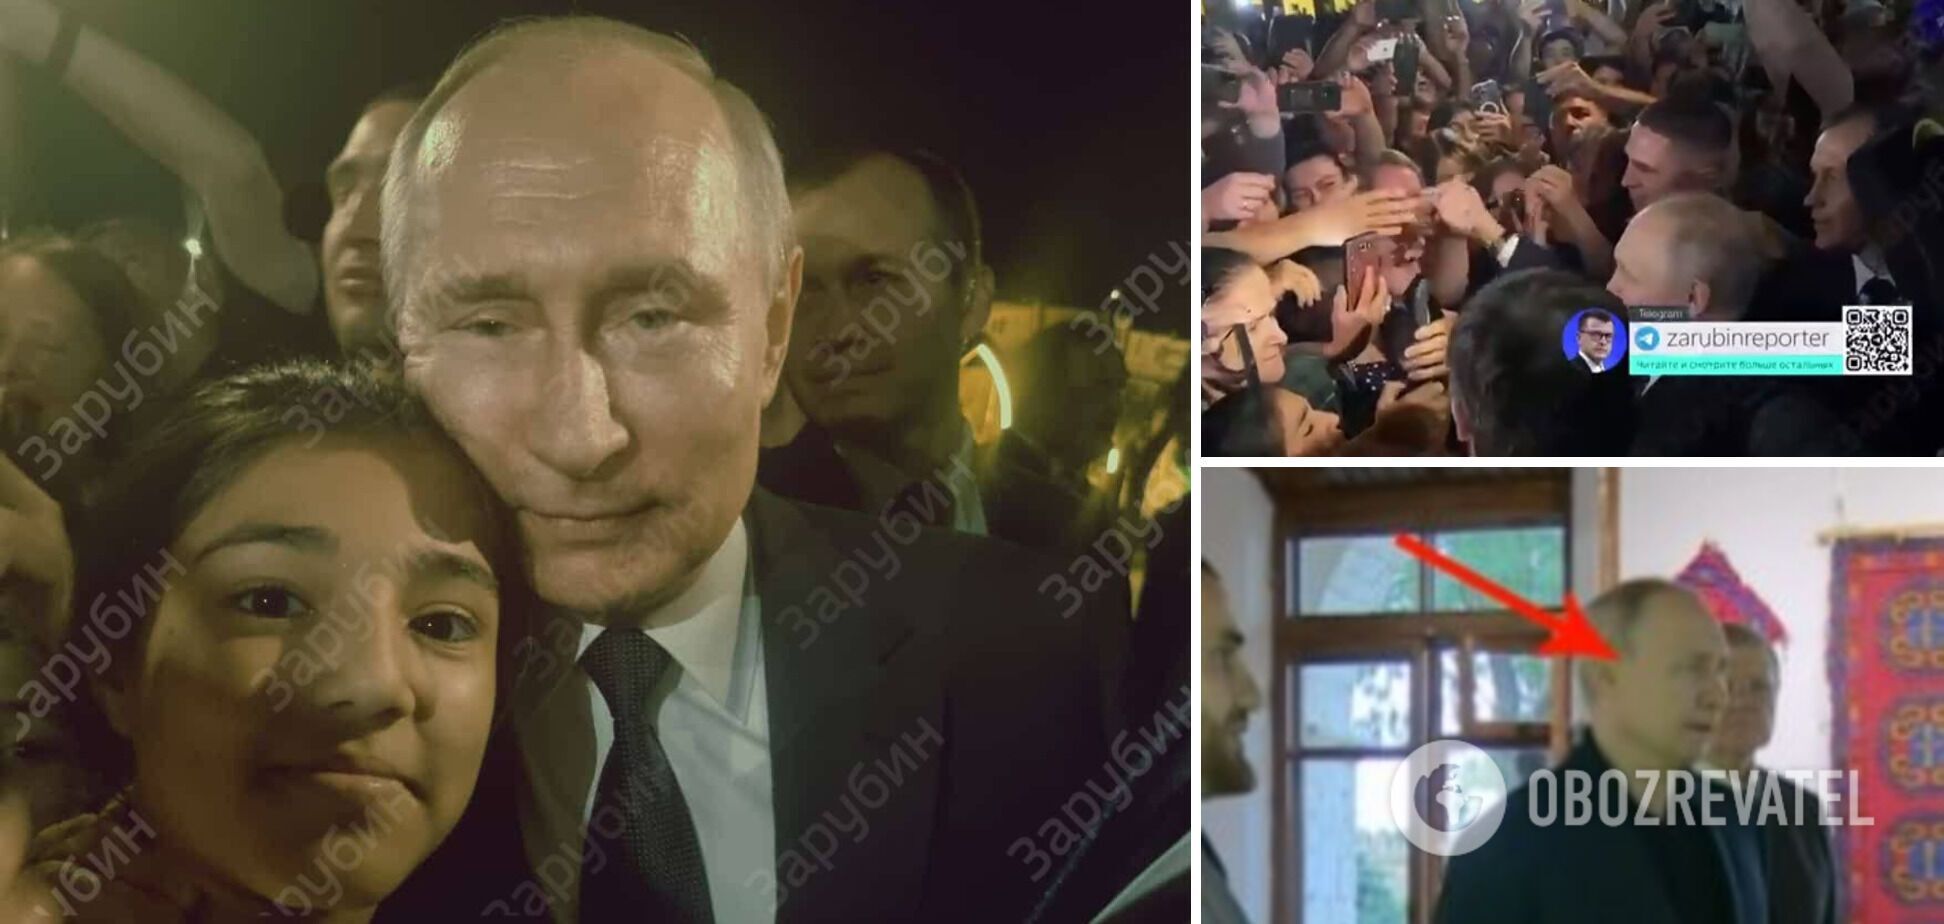 Постоянный смех и 'синяк' вокруг глаза: Путин вышел 'в народ' в Дербенте, но на кадрах заметили 'нюансы'. Фото и видео